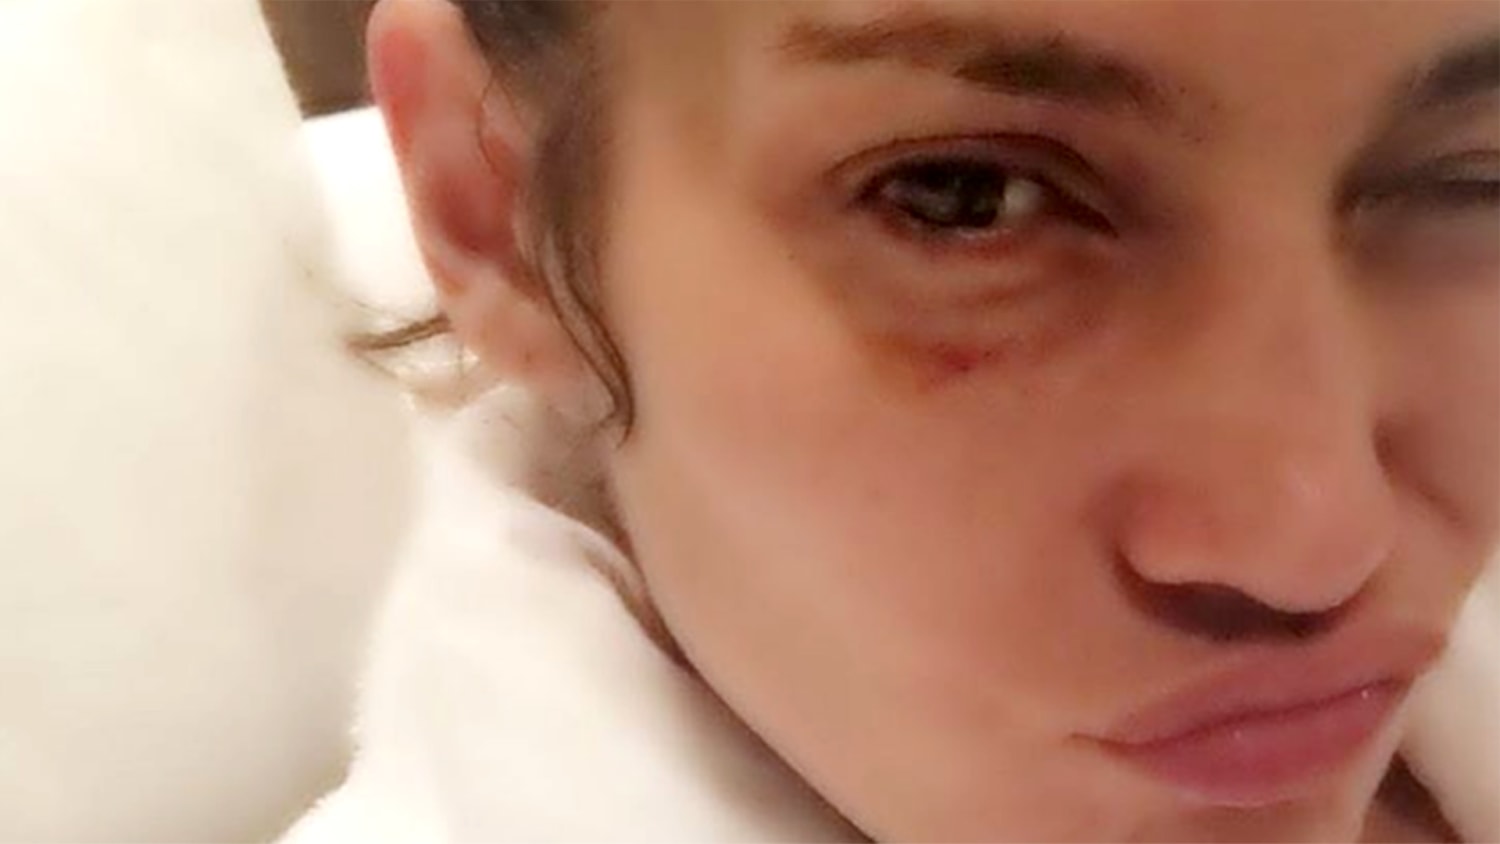 Ouch! Jennifer Lopez reveals black eye in photo, blames work